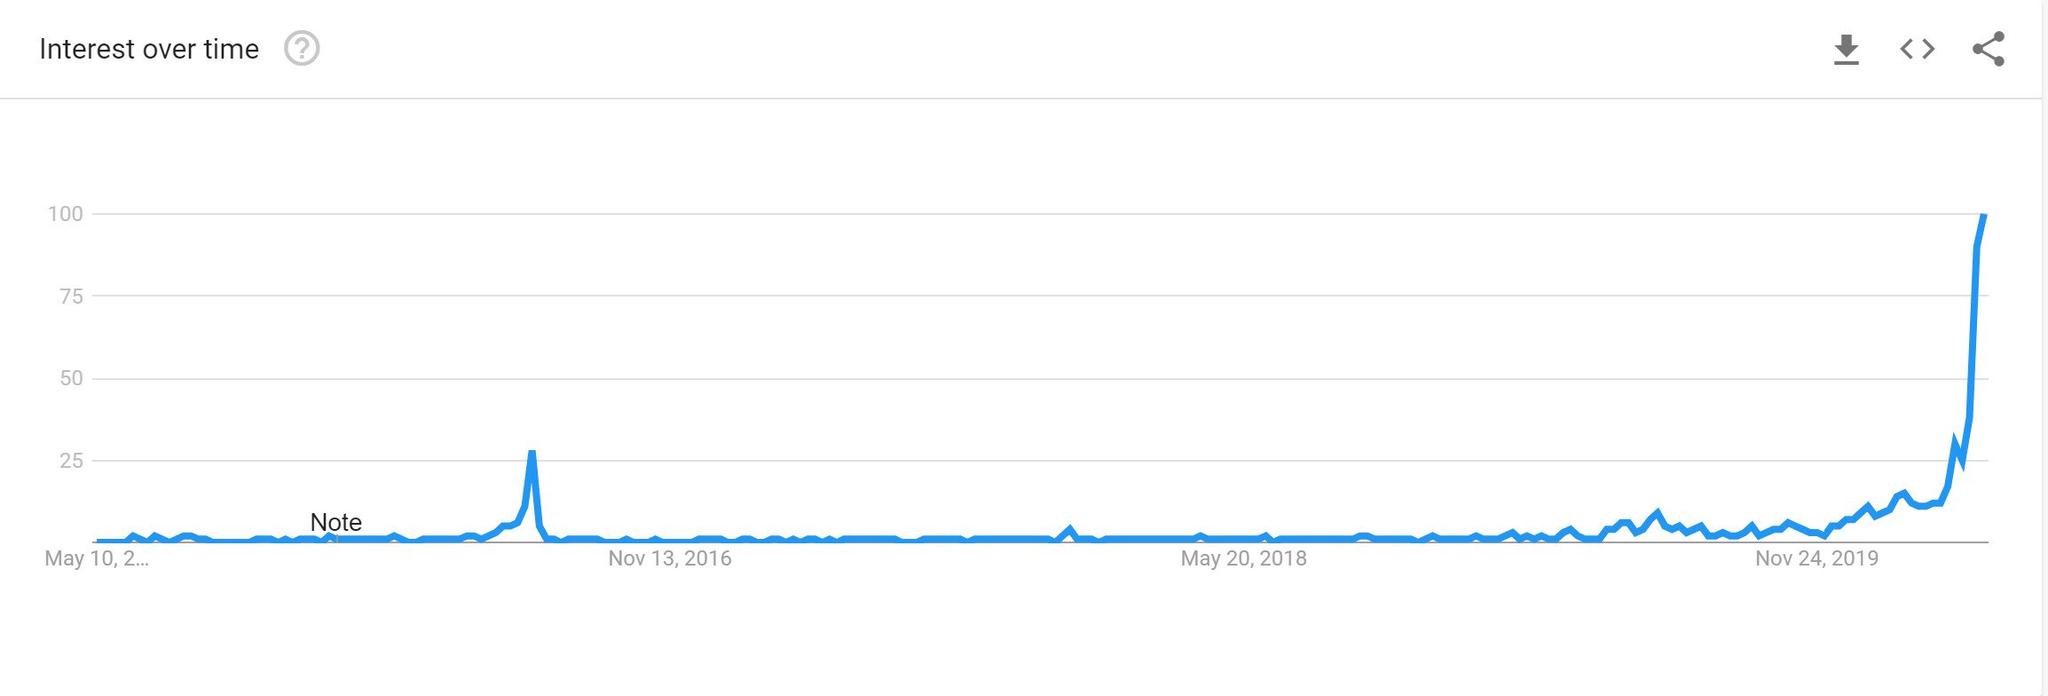 谷歌搜索“比特币减半” 来源：Google趋势